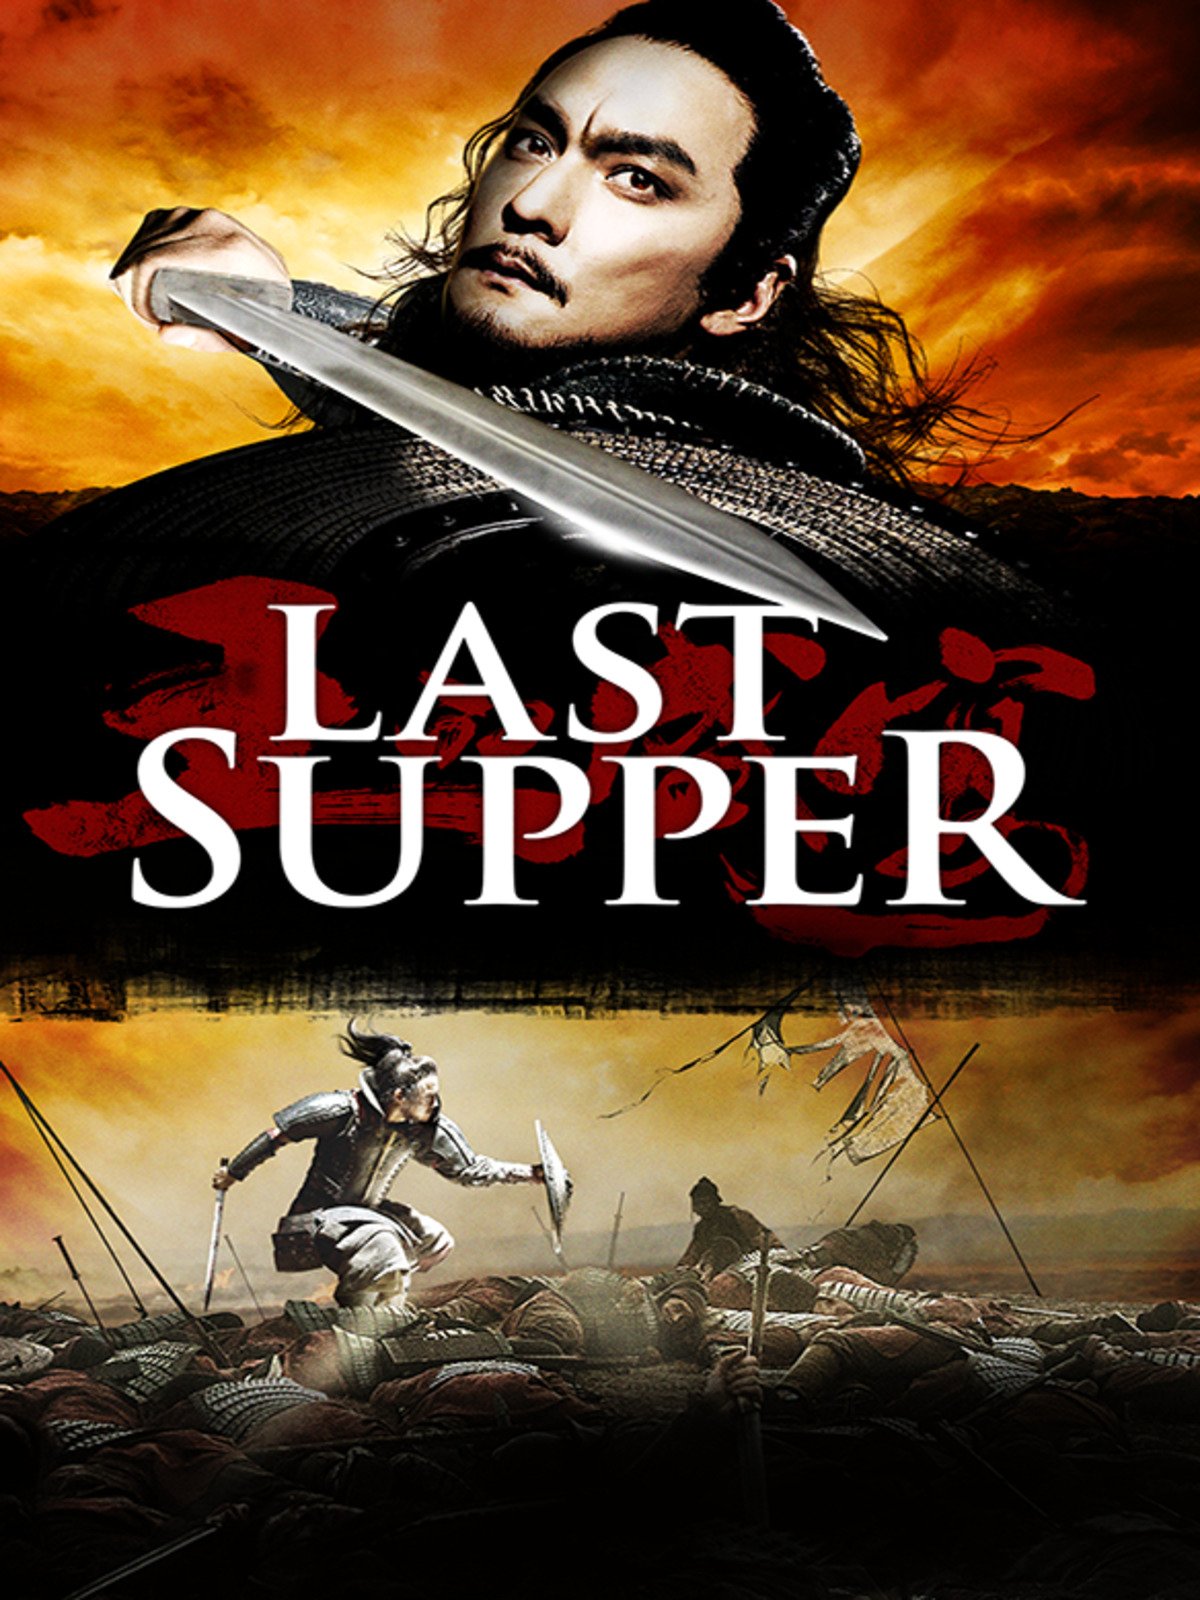 ดูหนังออนไลน์ ดูหนัง The Last Supper 2013 ฌ้อป๋าอ๋อง มหากาพย์ลำน้ำเลือด movie678